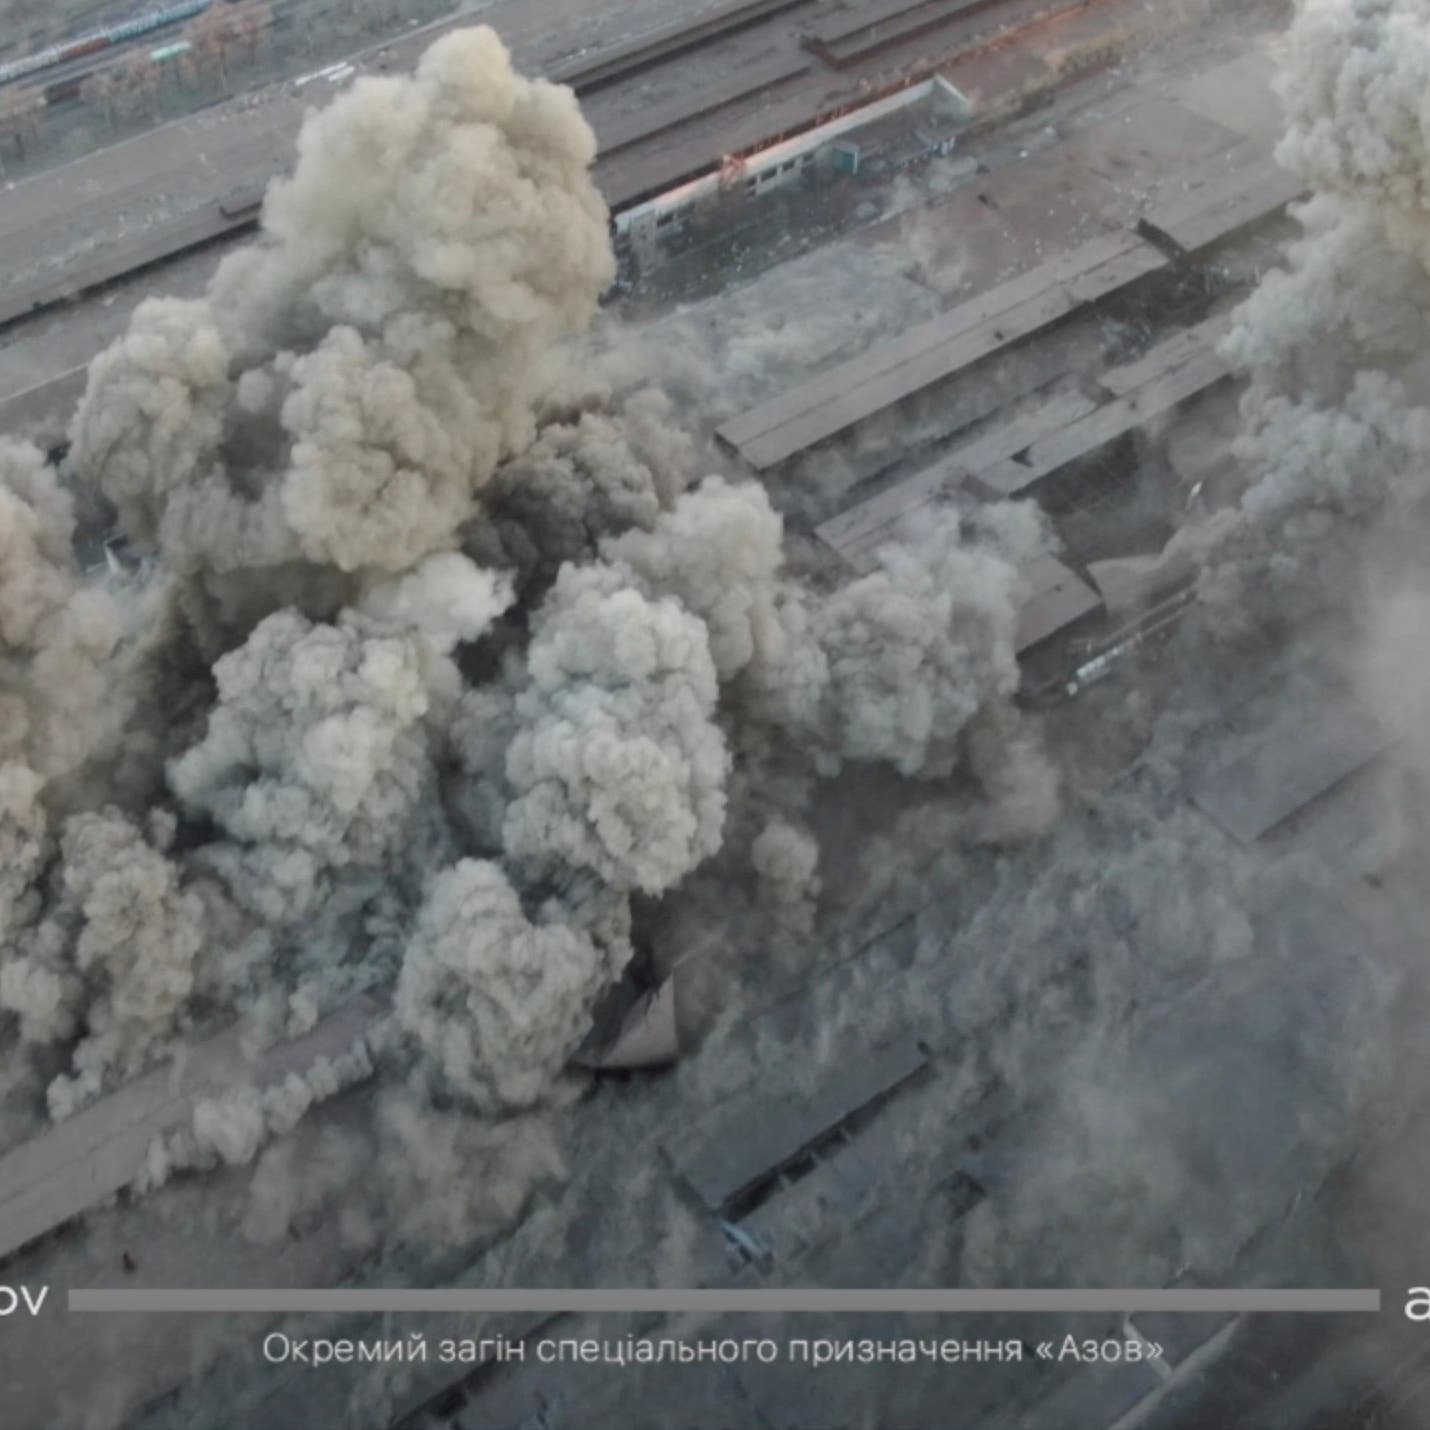 أوكرانيا: روسيا أسقطت قنابل "خارقة" على ماريوبول